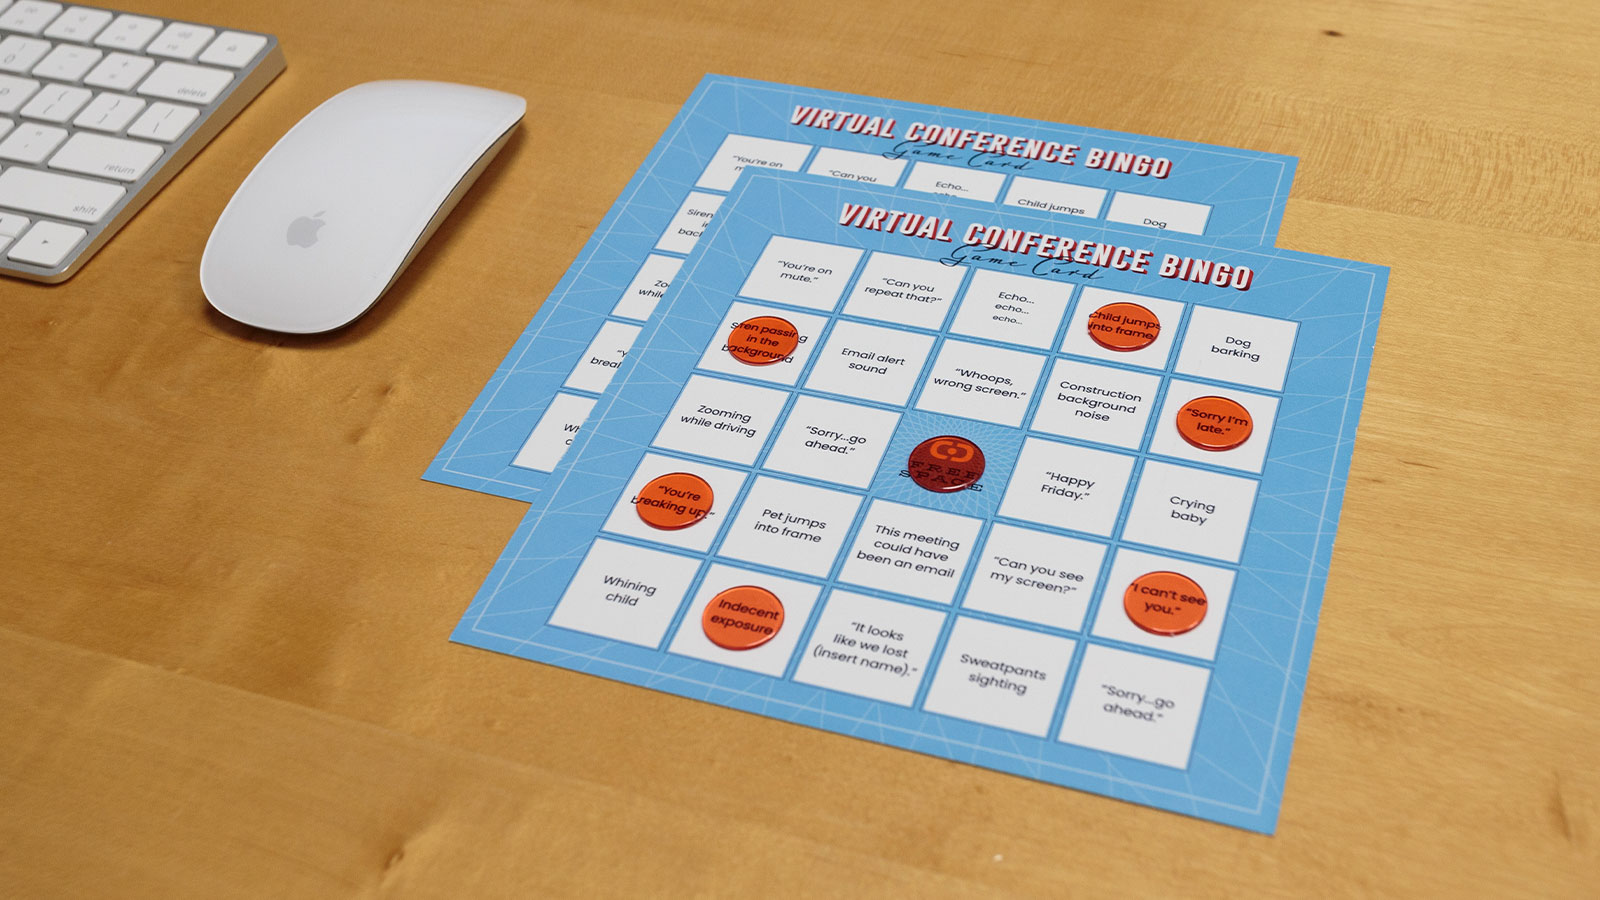 Delin Design Direct-Mail Promotions – Holiday 2020 Virutal Conference Bingo Card on Desk